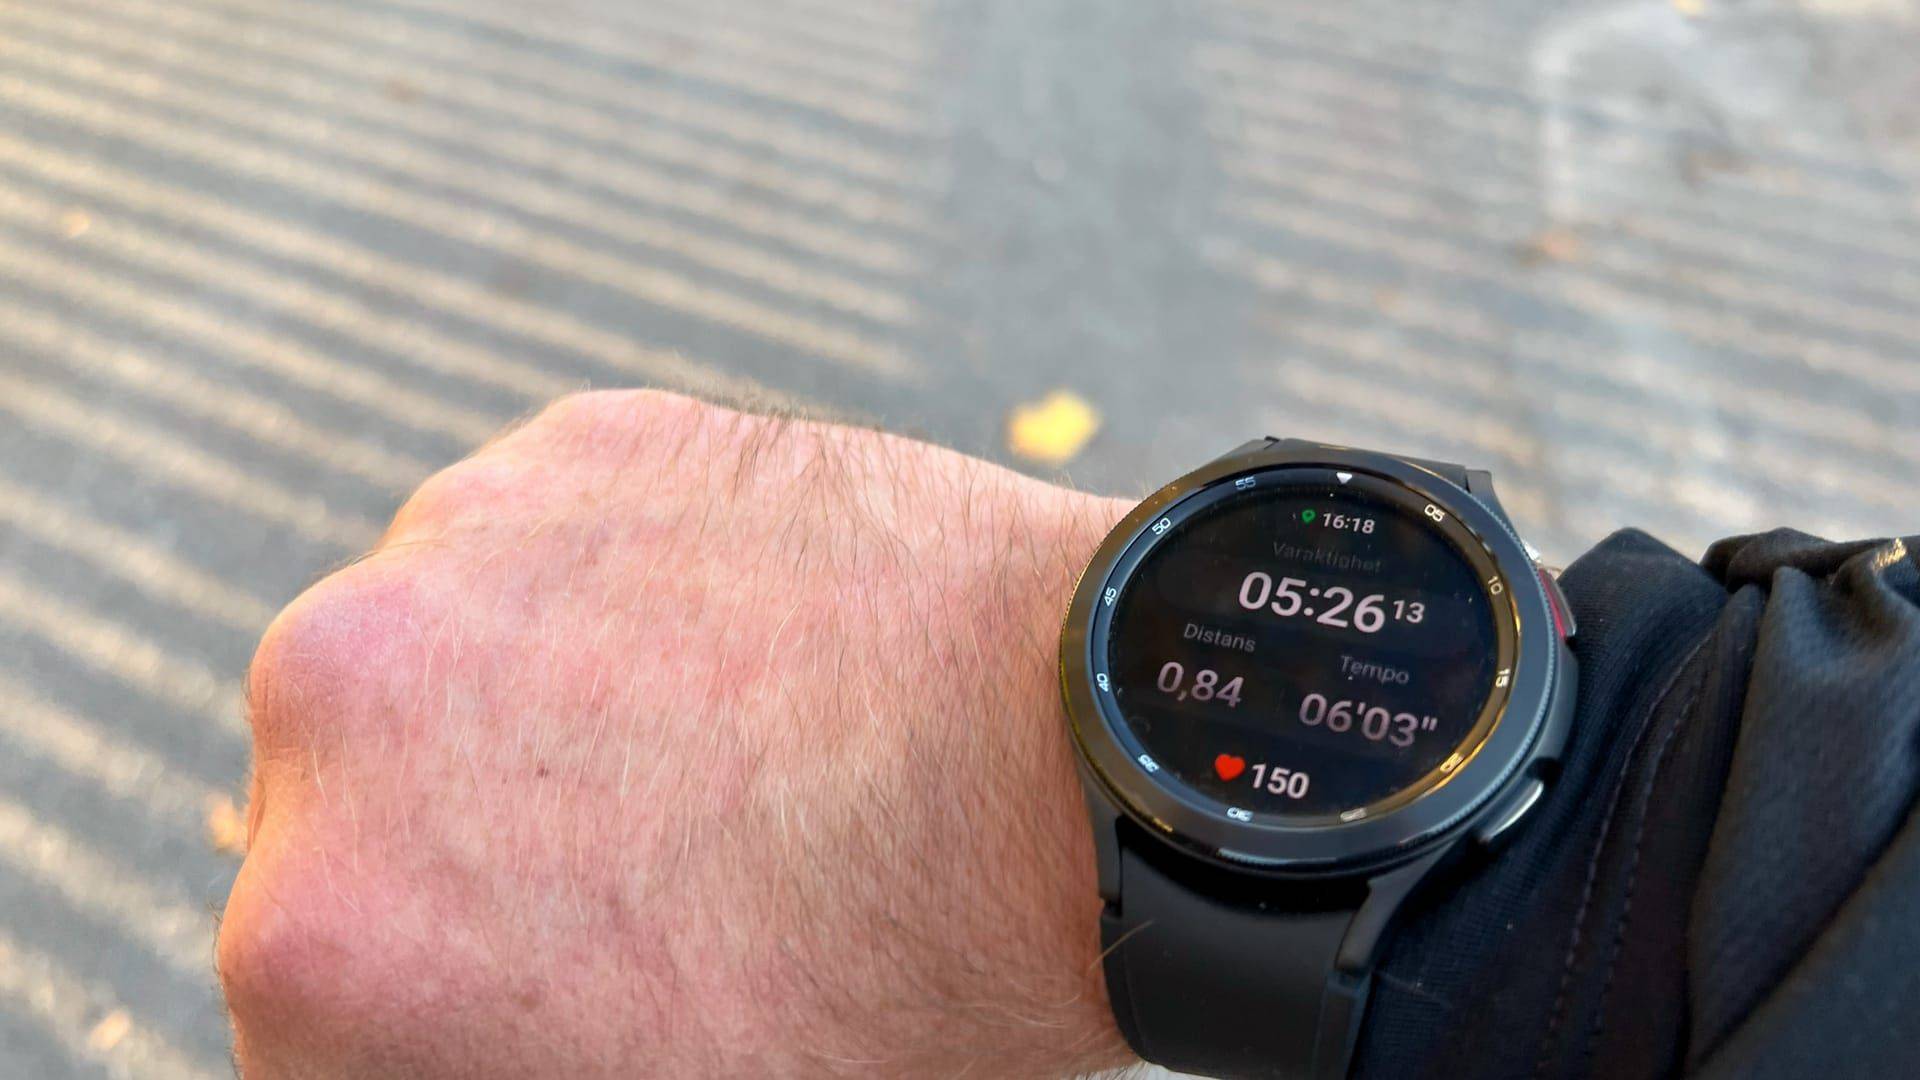 Billede fra test af pulsur Samsung Galaxy Watch 4 Classic - displayet viser data fra en løbetur